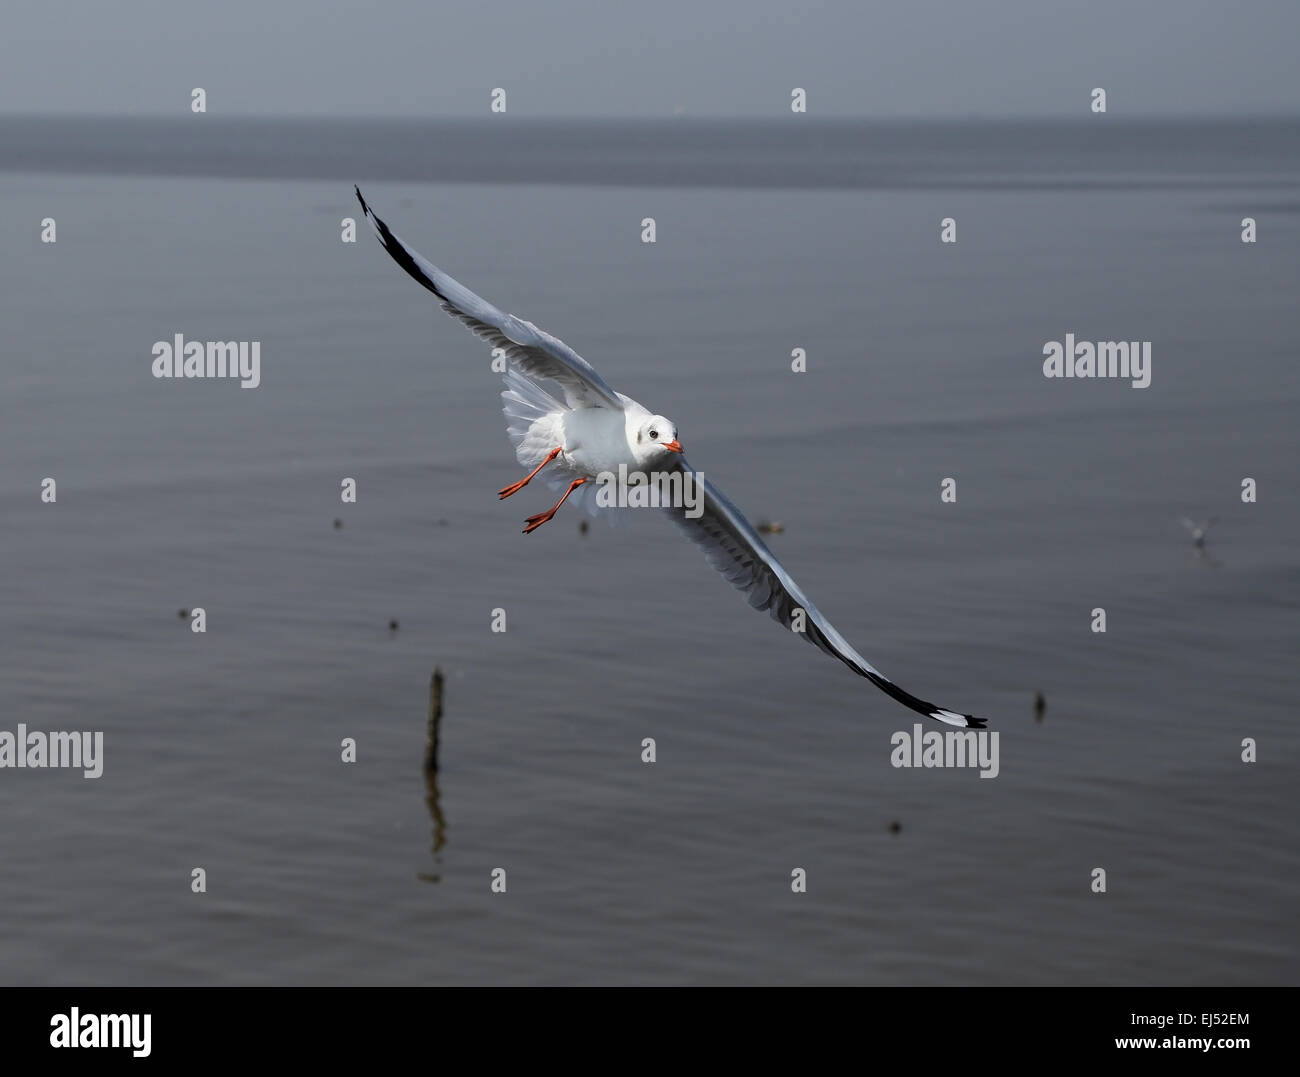 Seagull flying at Bang Pu beach, Thailand Stock Photo